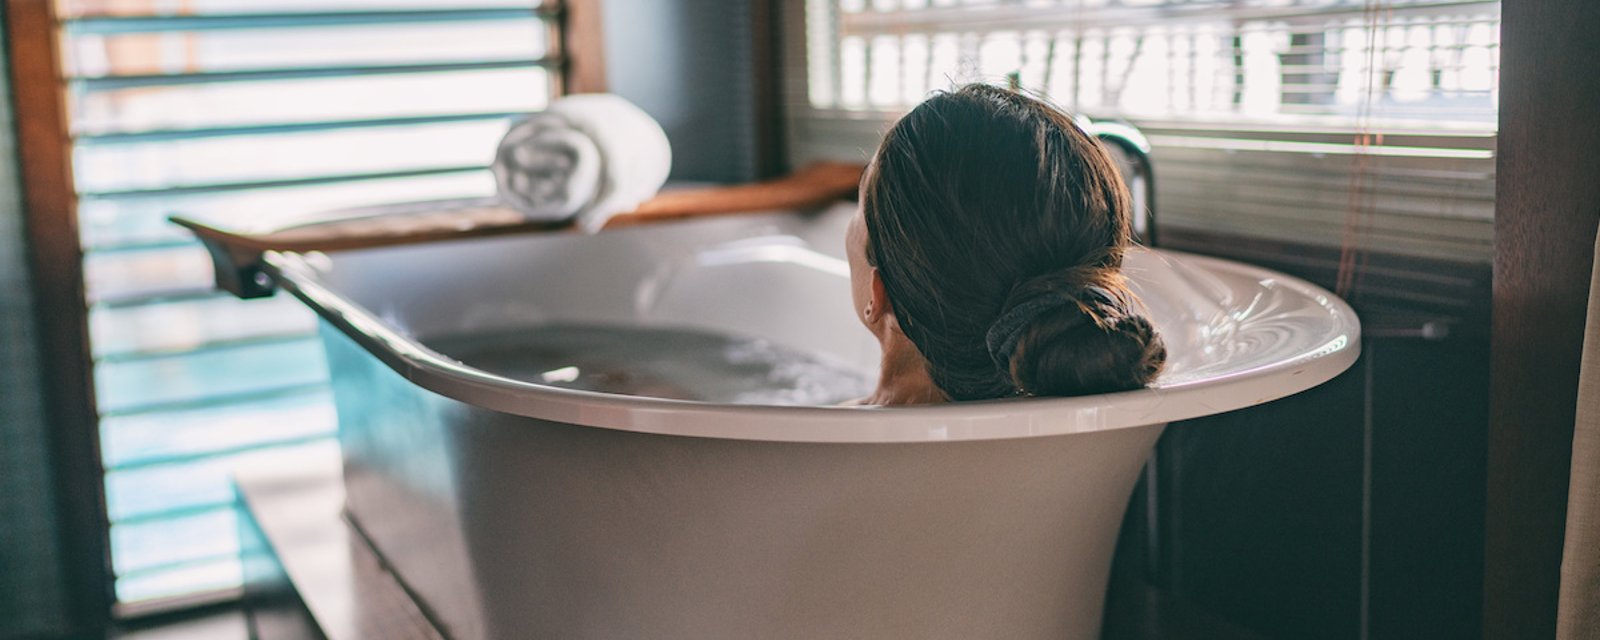 6 avantages à prendre un bain chaque jour